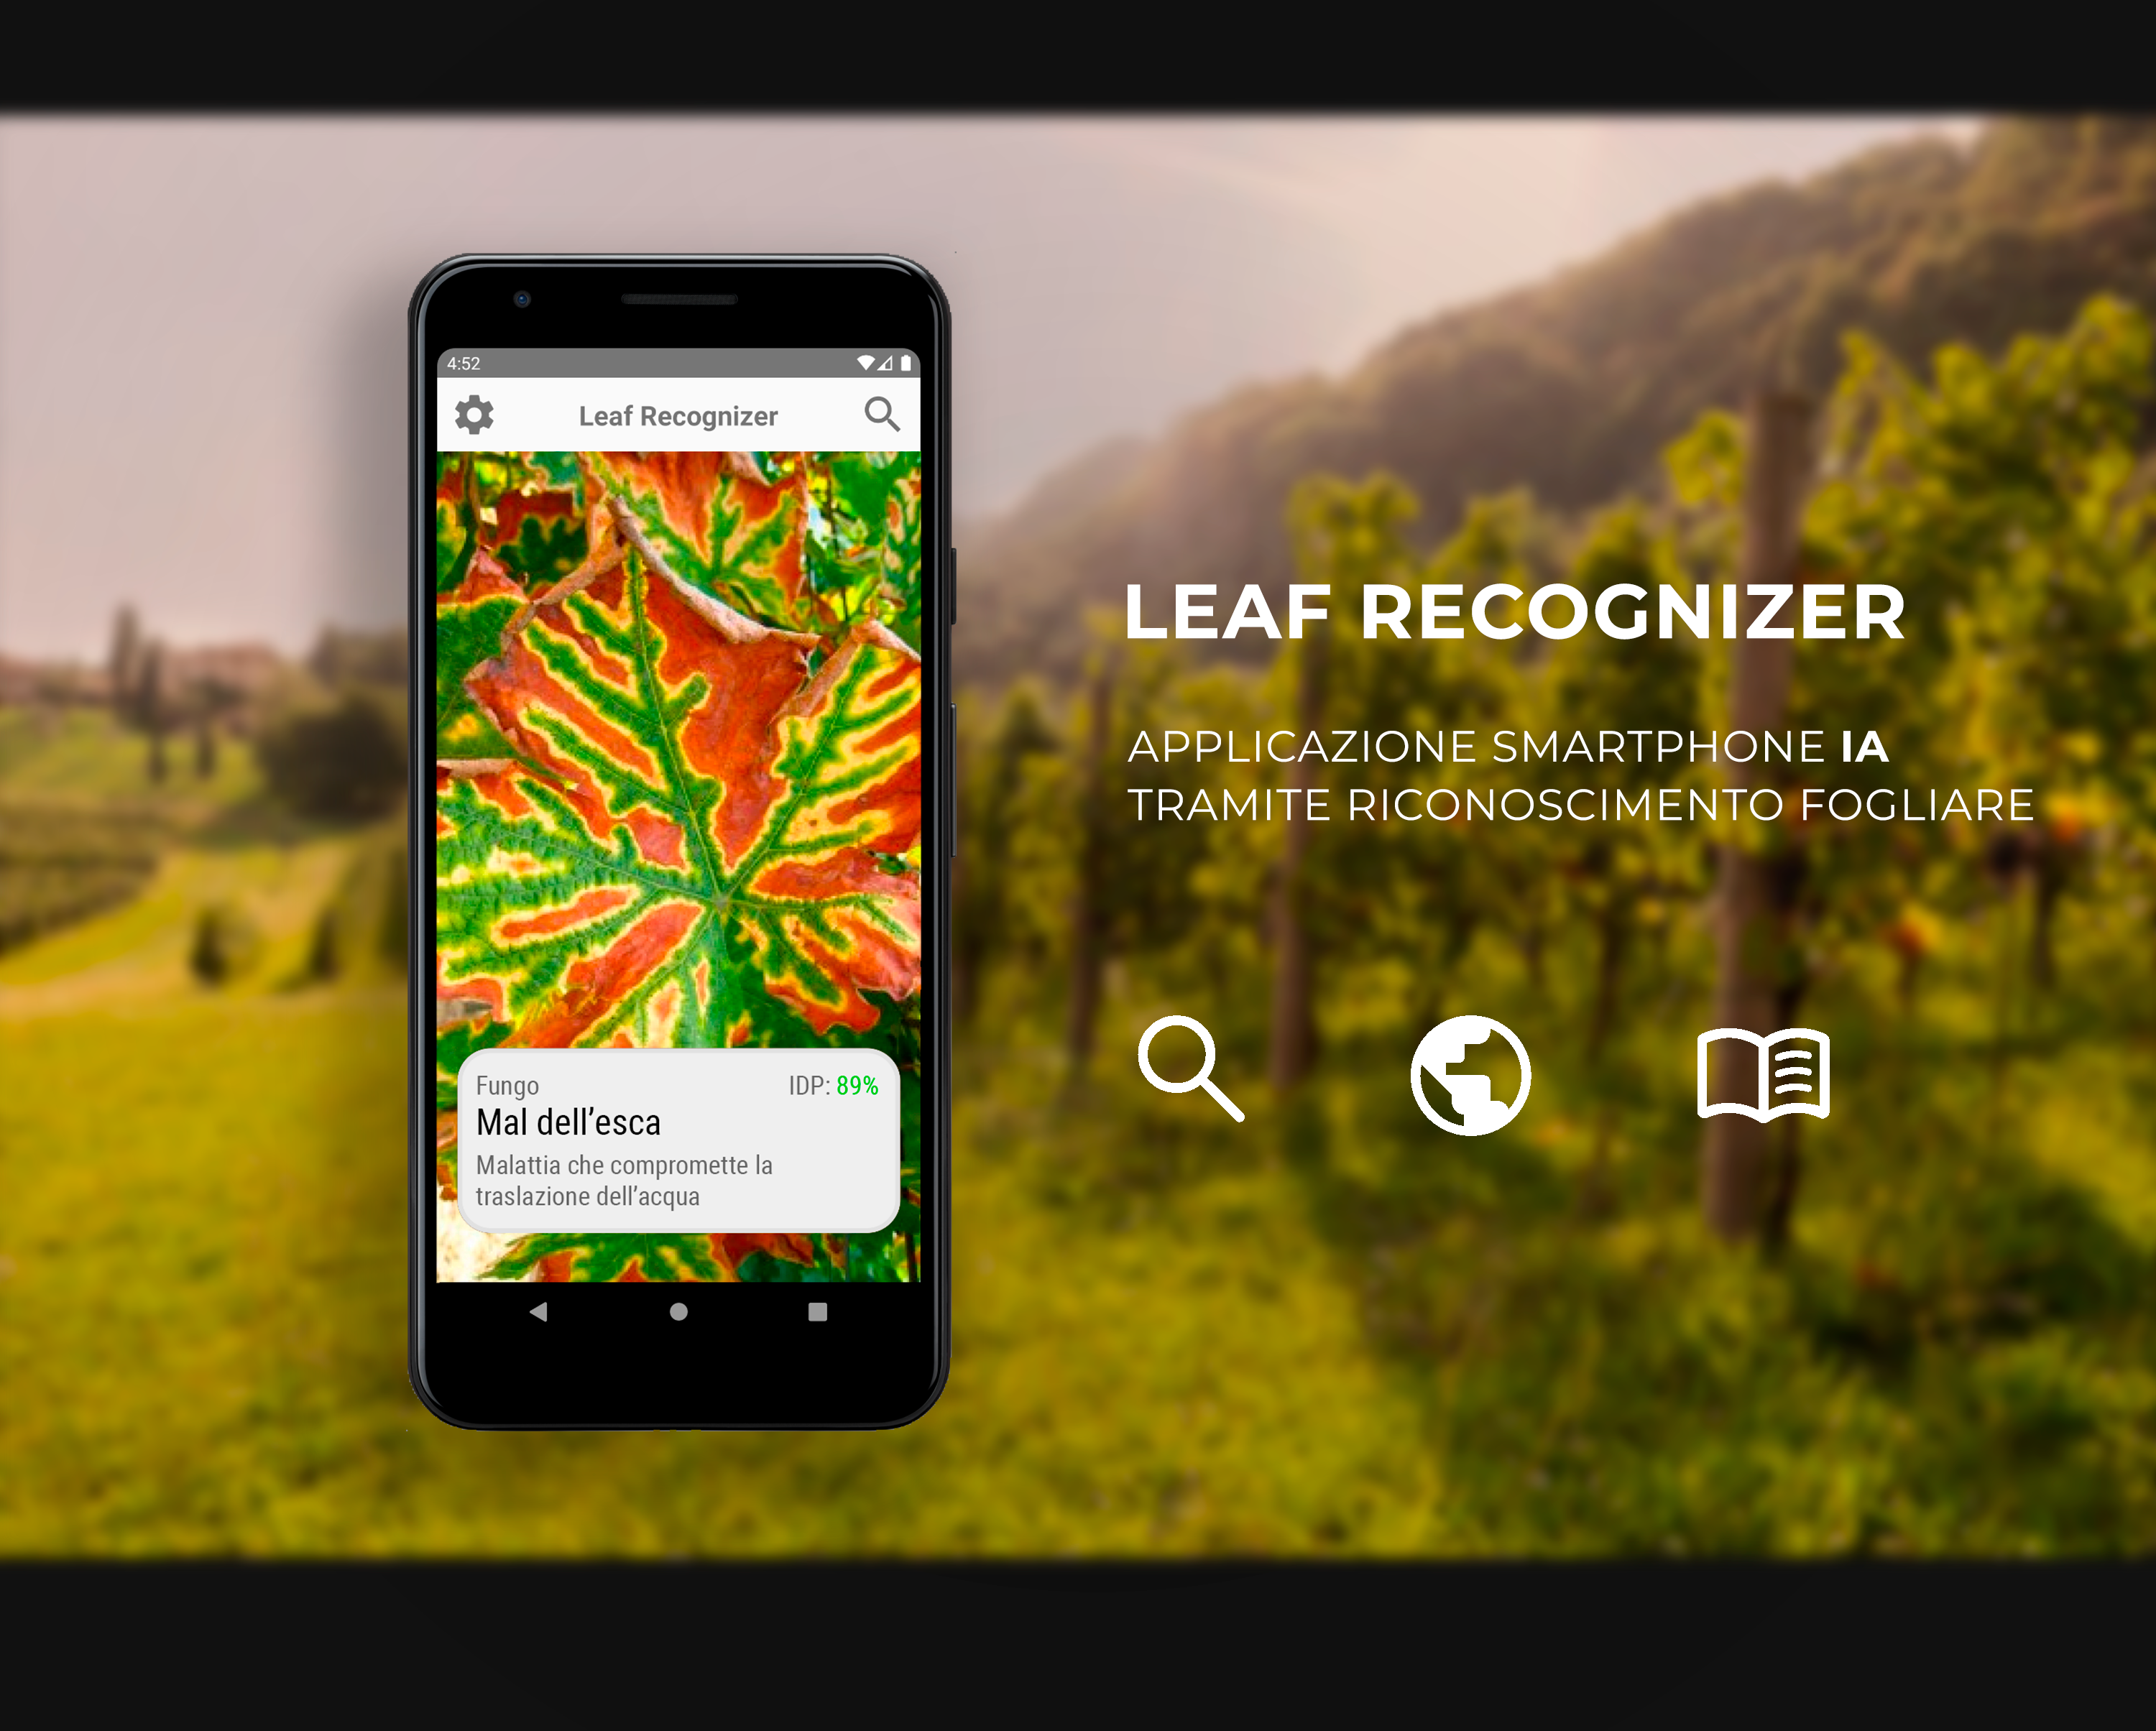 LeafRecognizer